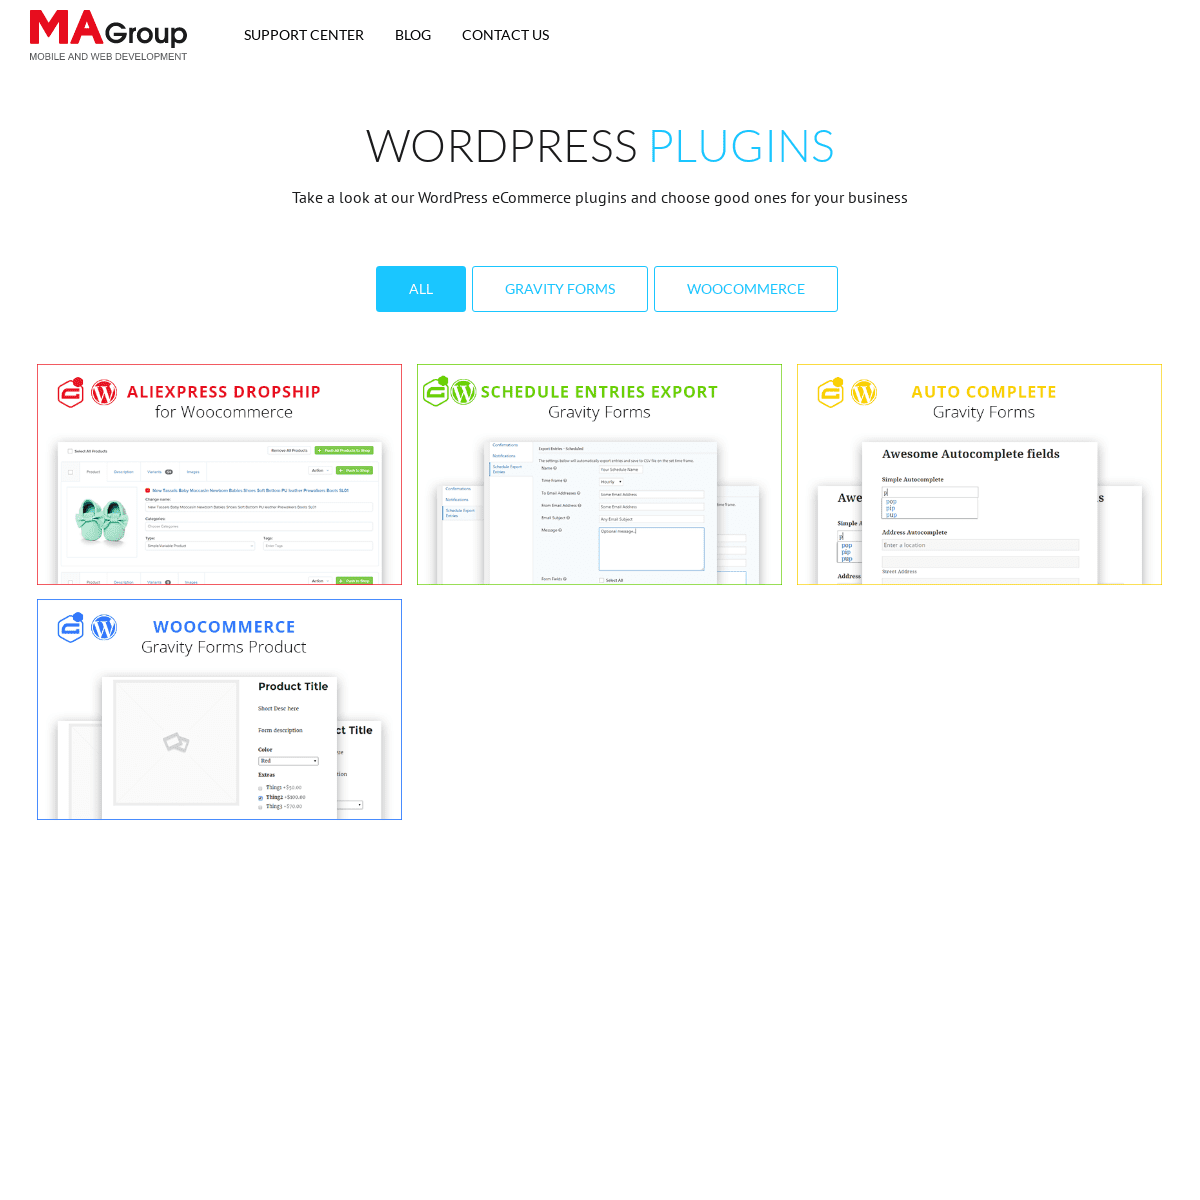 A complete backup of ma-group5.com